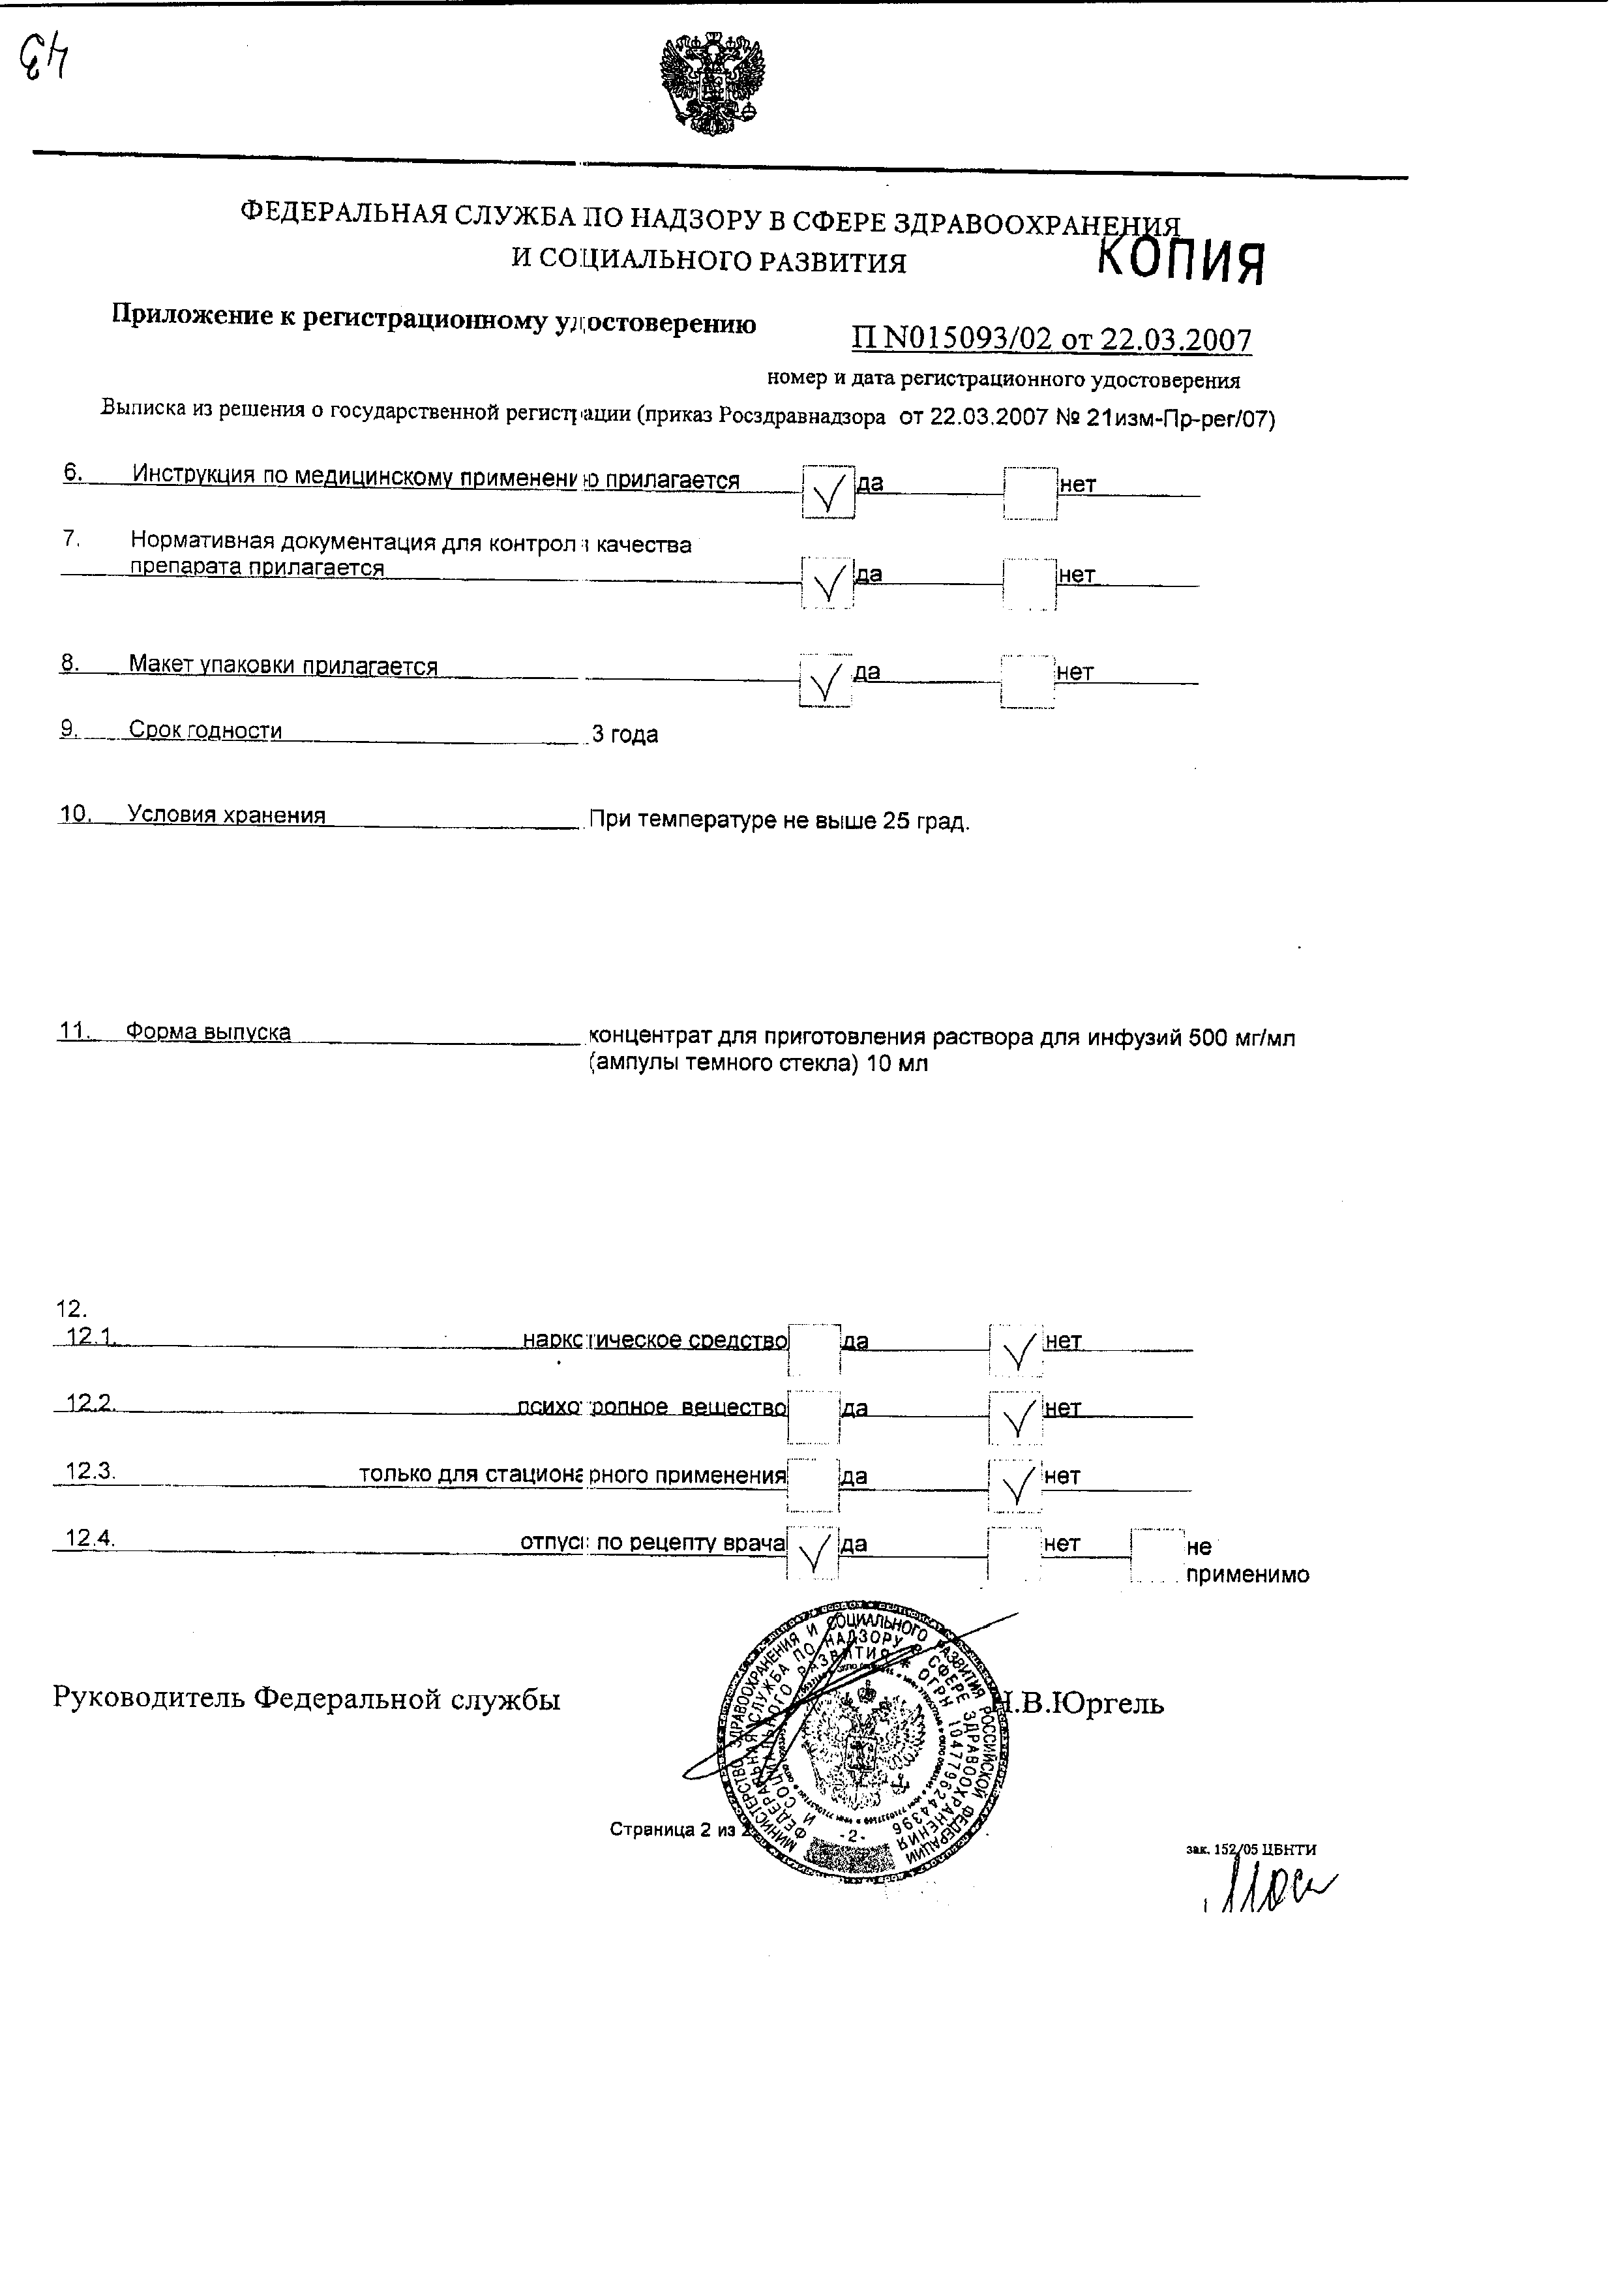 Гепа-Мерц сертификат